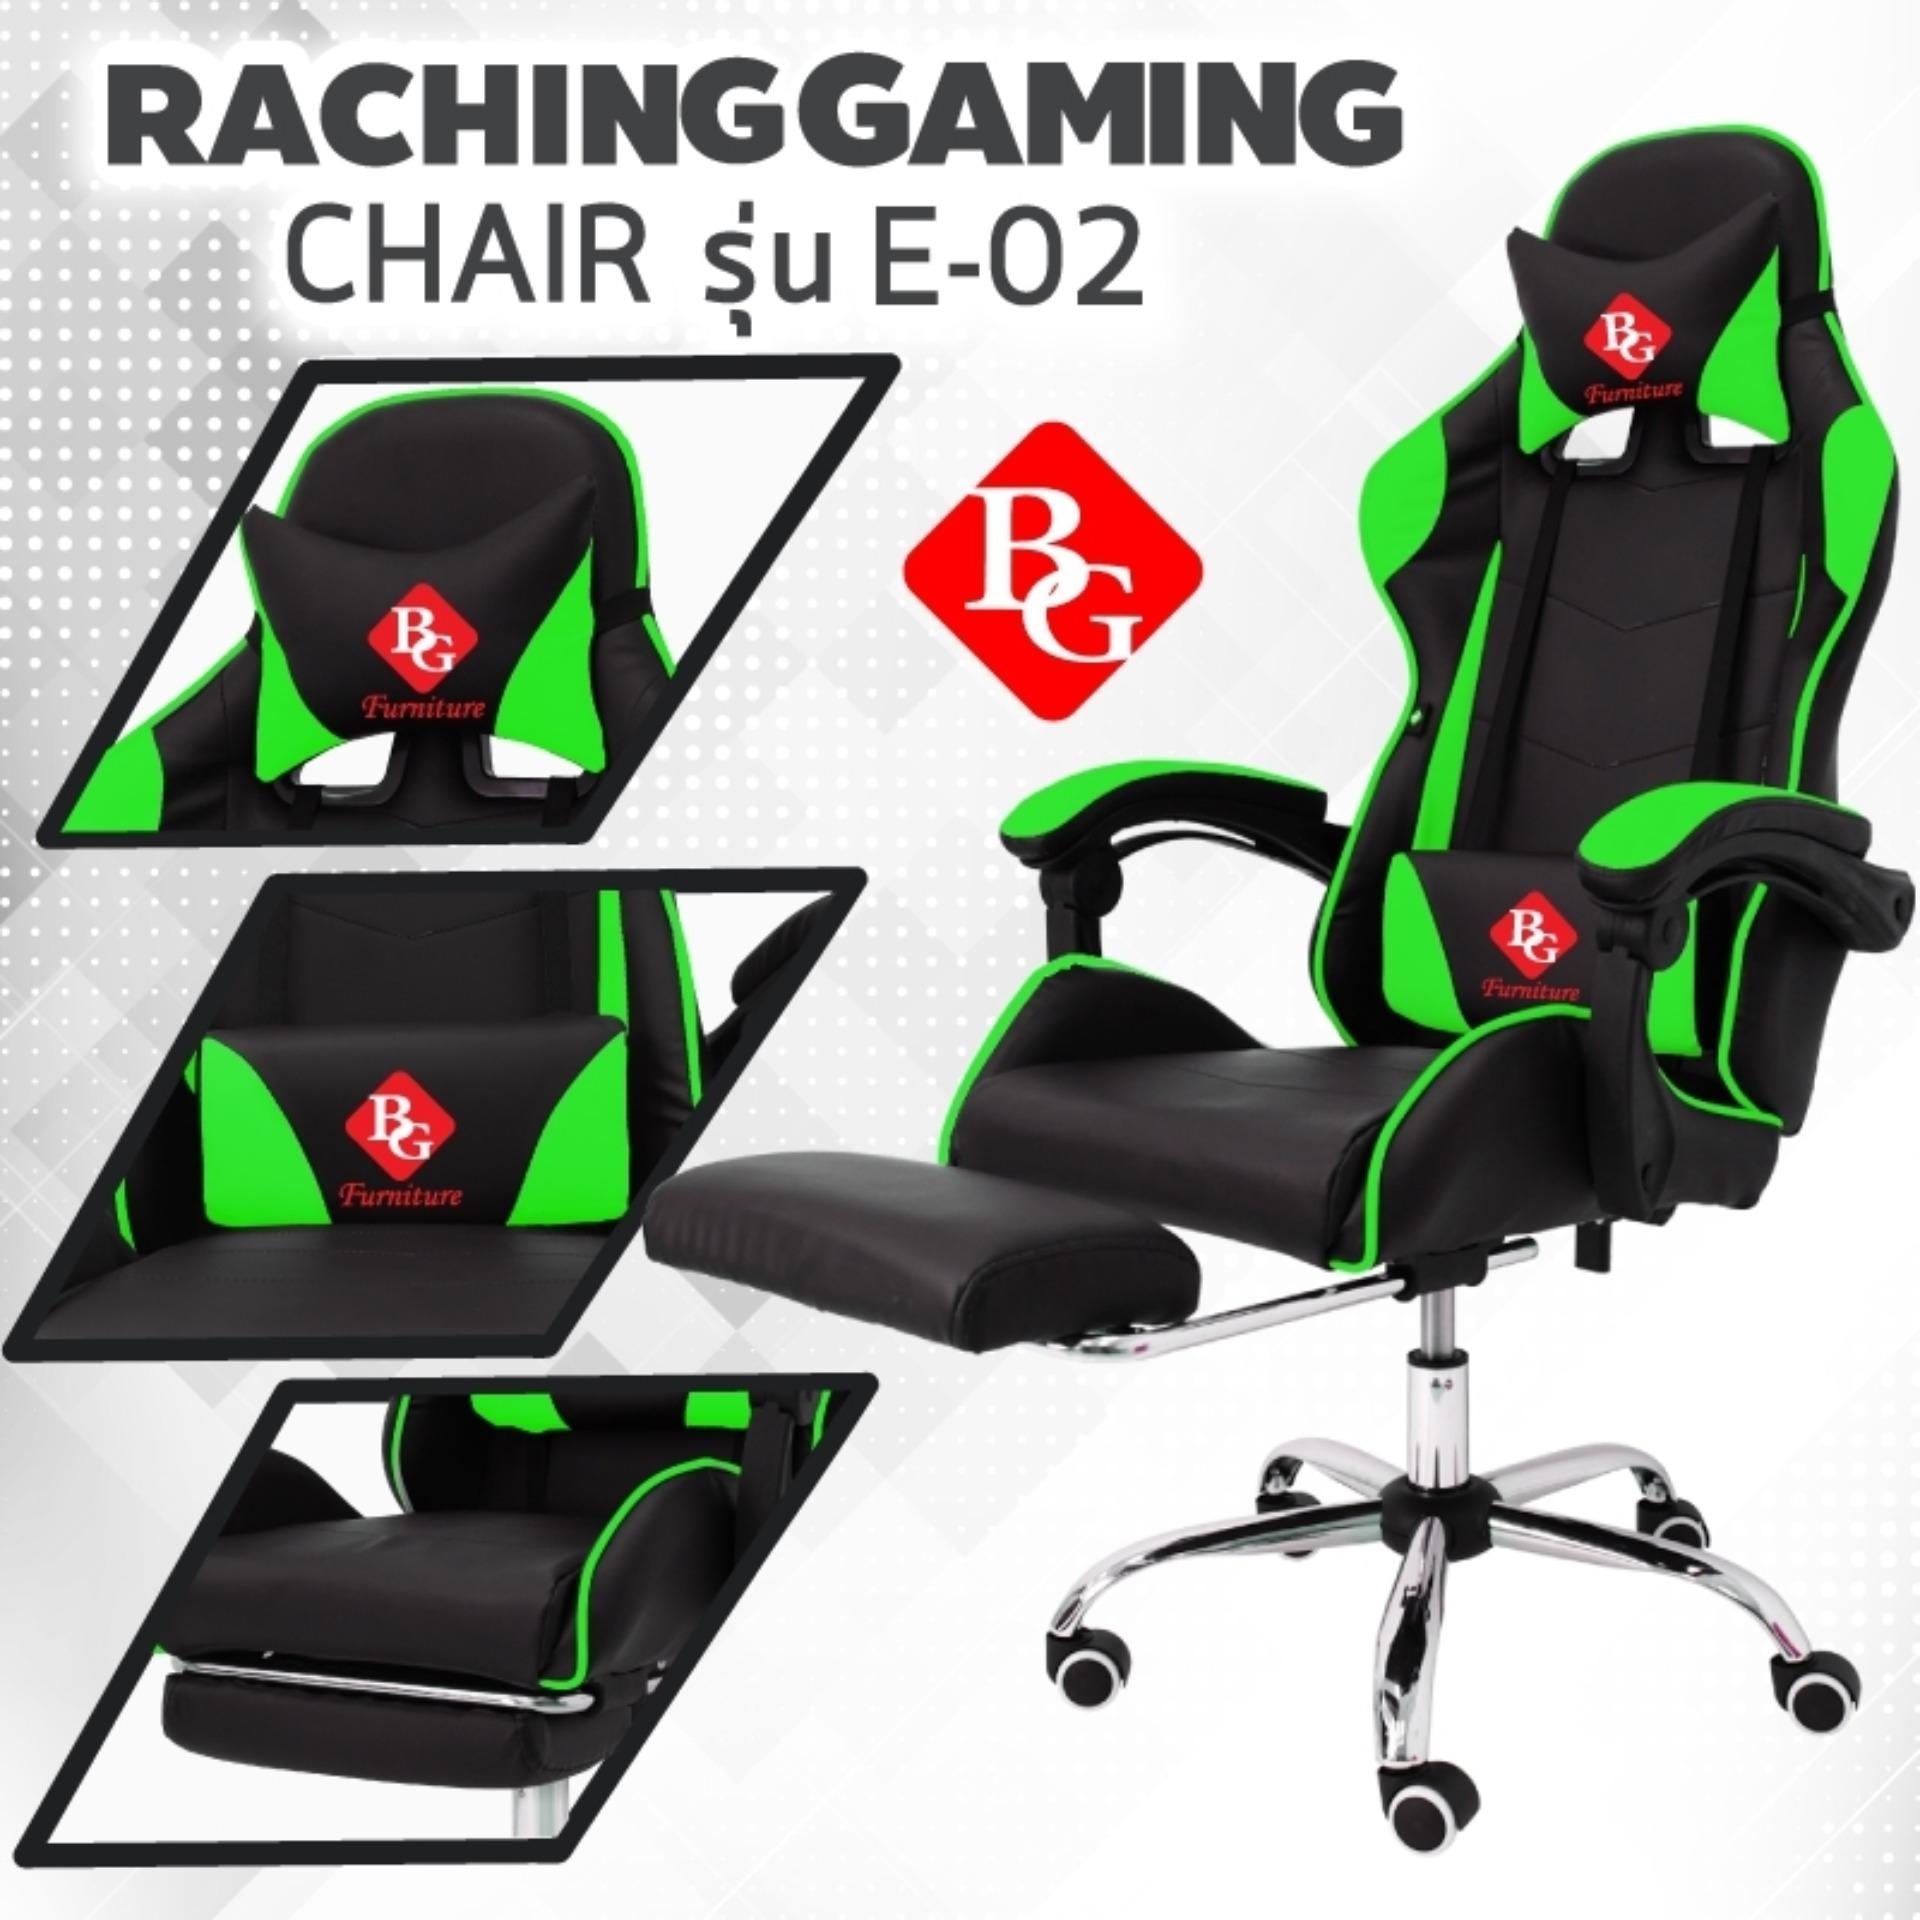 ยี่ห้อนี้ดีไหม  BG Furniture Racing Gaming Chair เก้าอี้เล่นเกม เก้าอี้เกมมิ่ง รุ่น E-02 (Green)